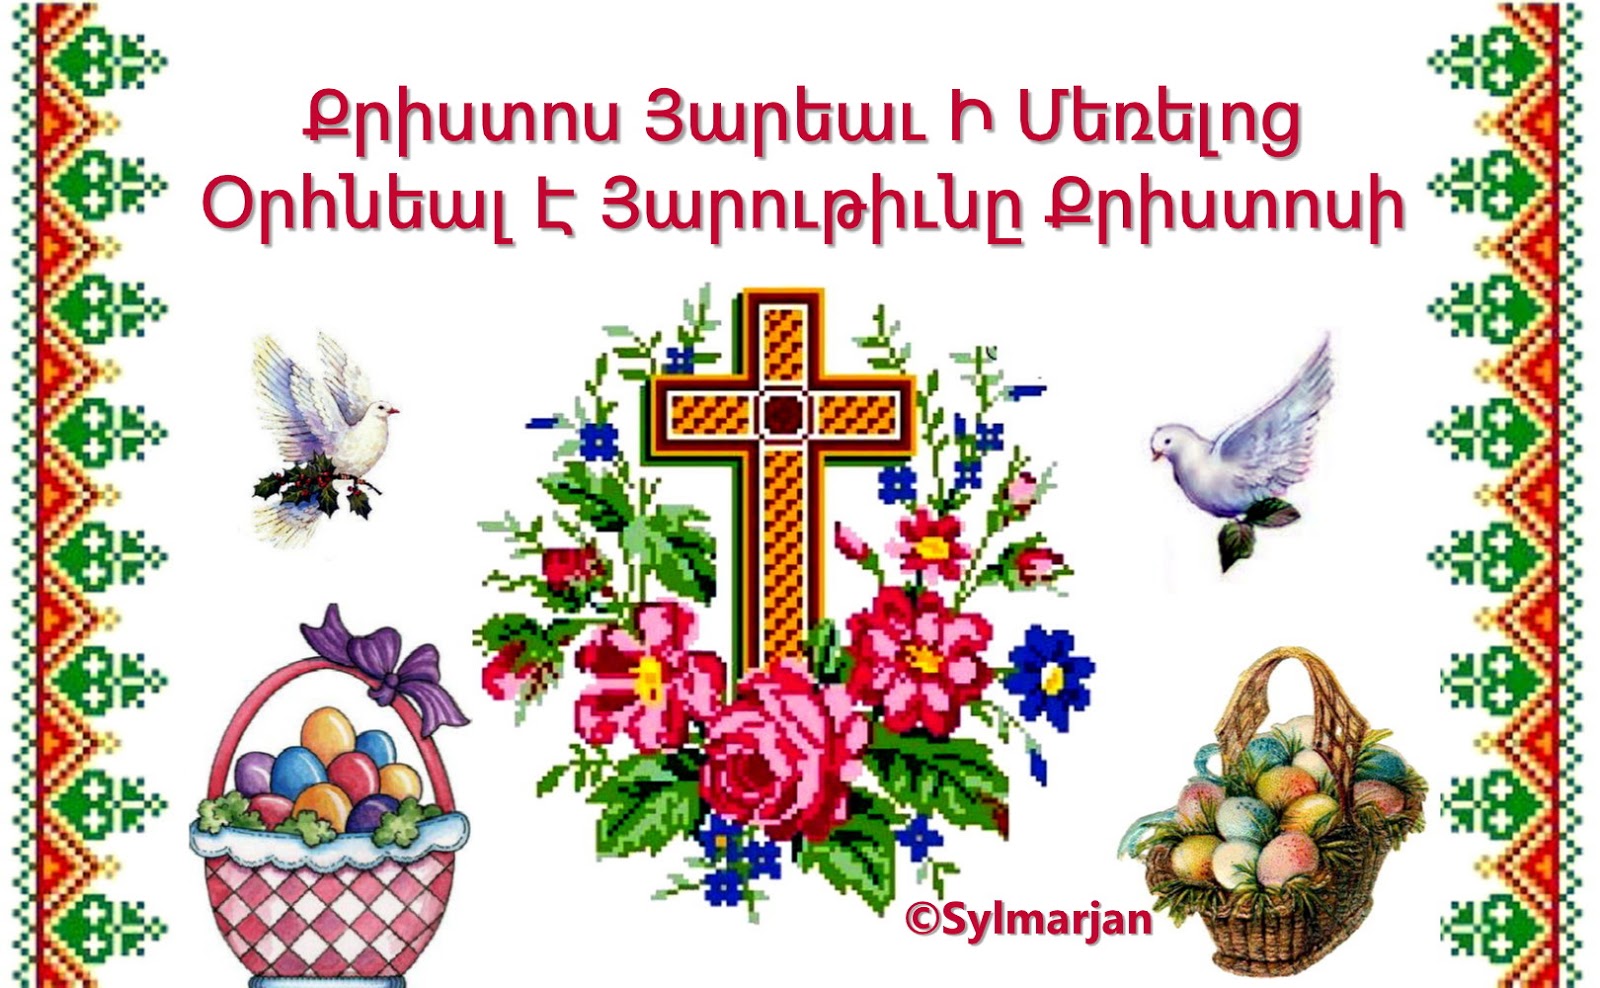 поздравления с армянской пасхой на армянском языке армянскими буквами